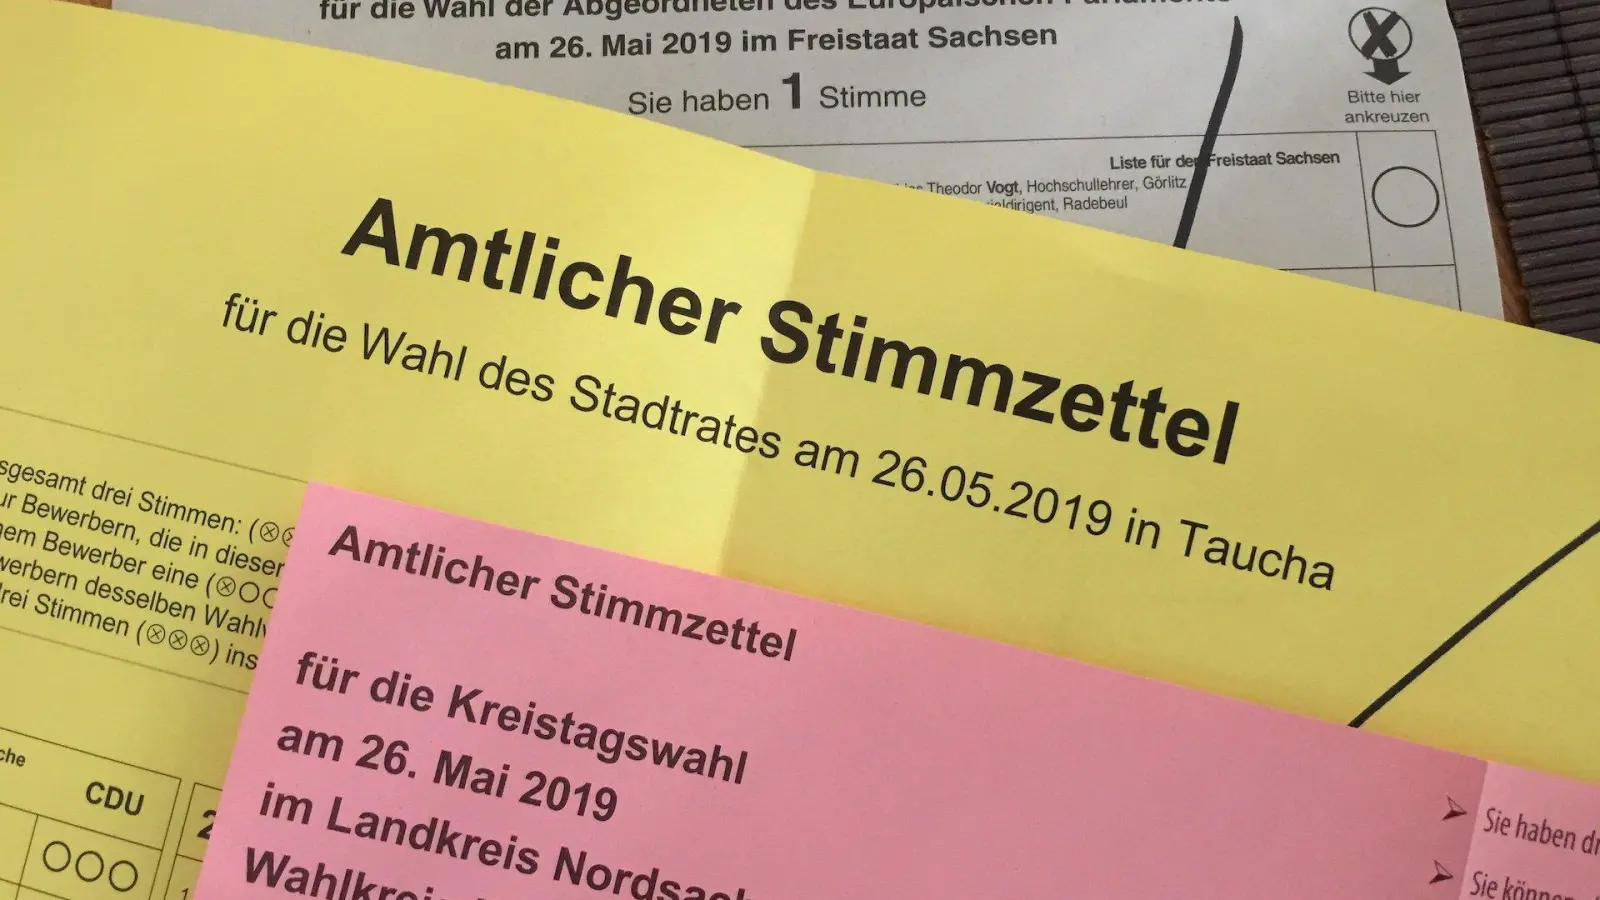 Kommunal- und Europawahlen: Alles zur Briefwahl (Foto: taucha-kompakt.de)